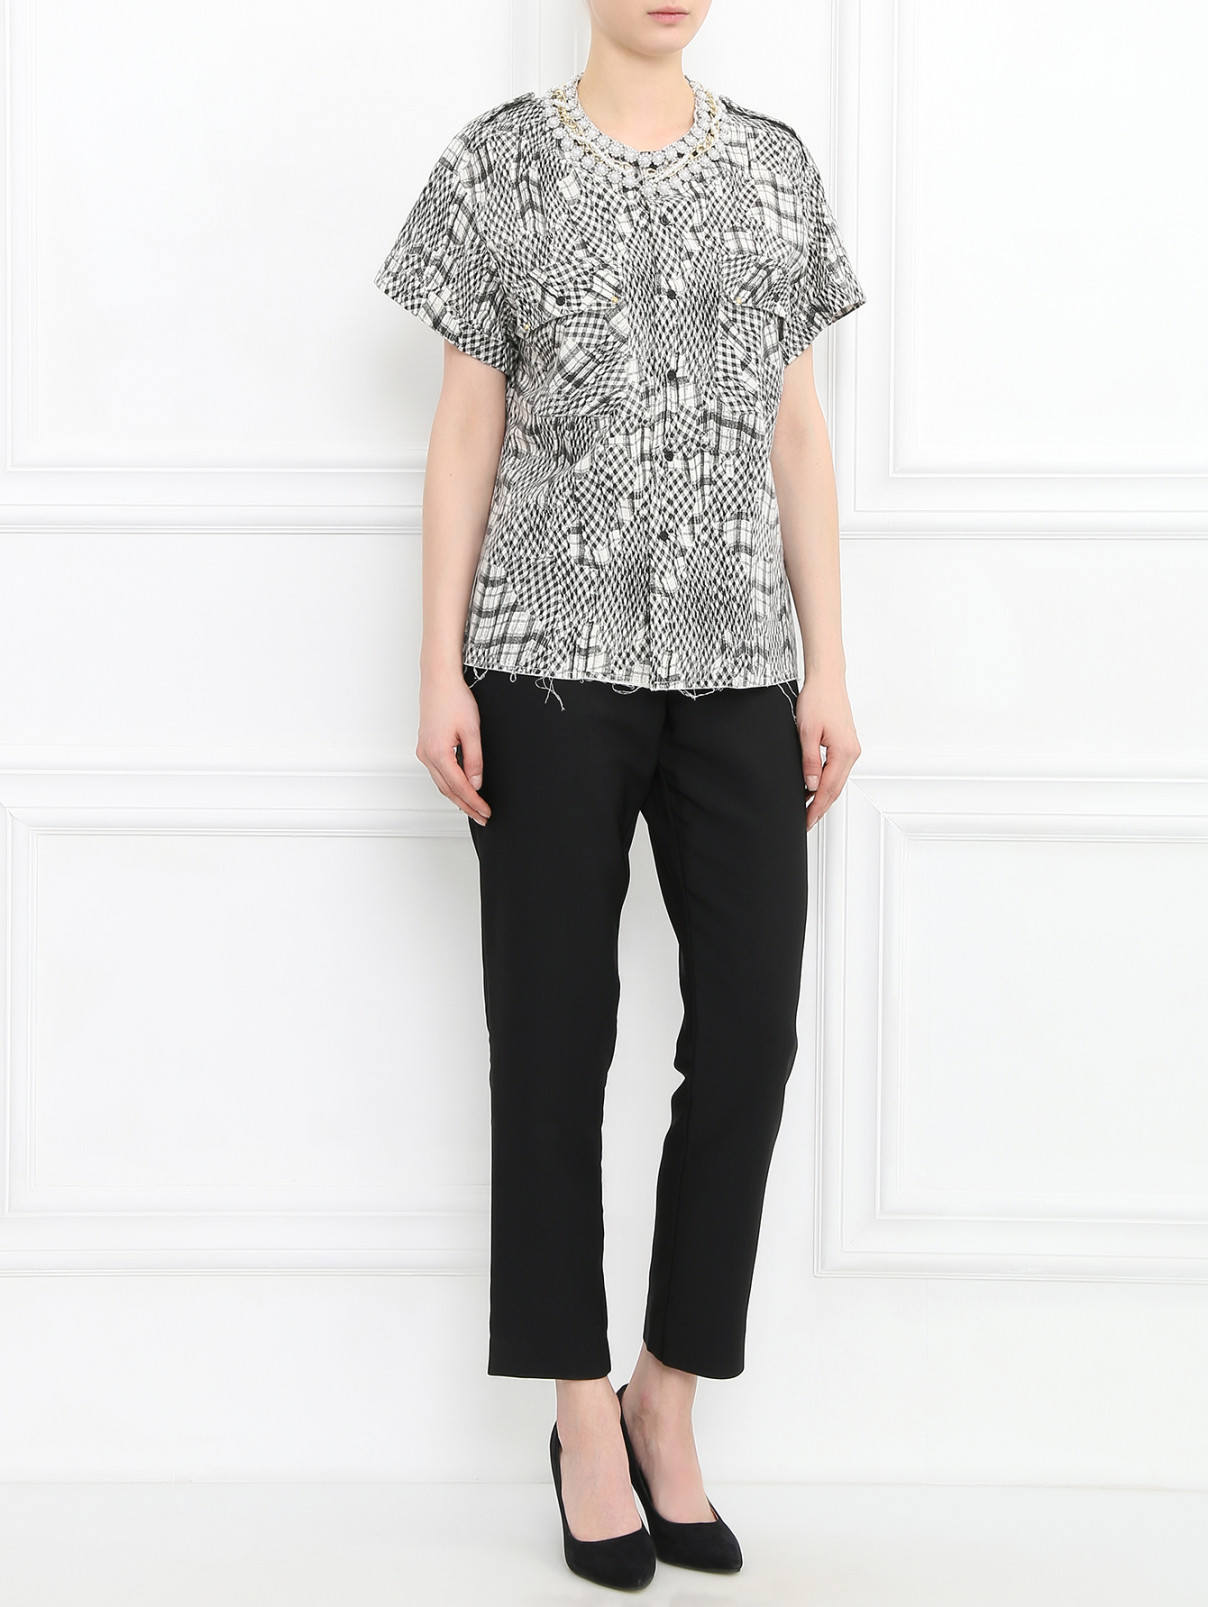 Рубашка из хлопка с узором "клетка" Forte Dei Marmi Couture  –  Модель Общий вид  – Цвет:  Узор